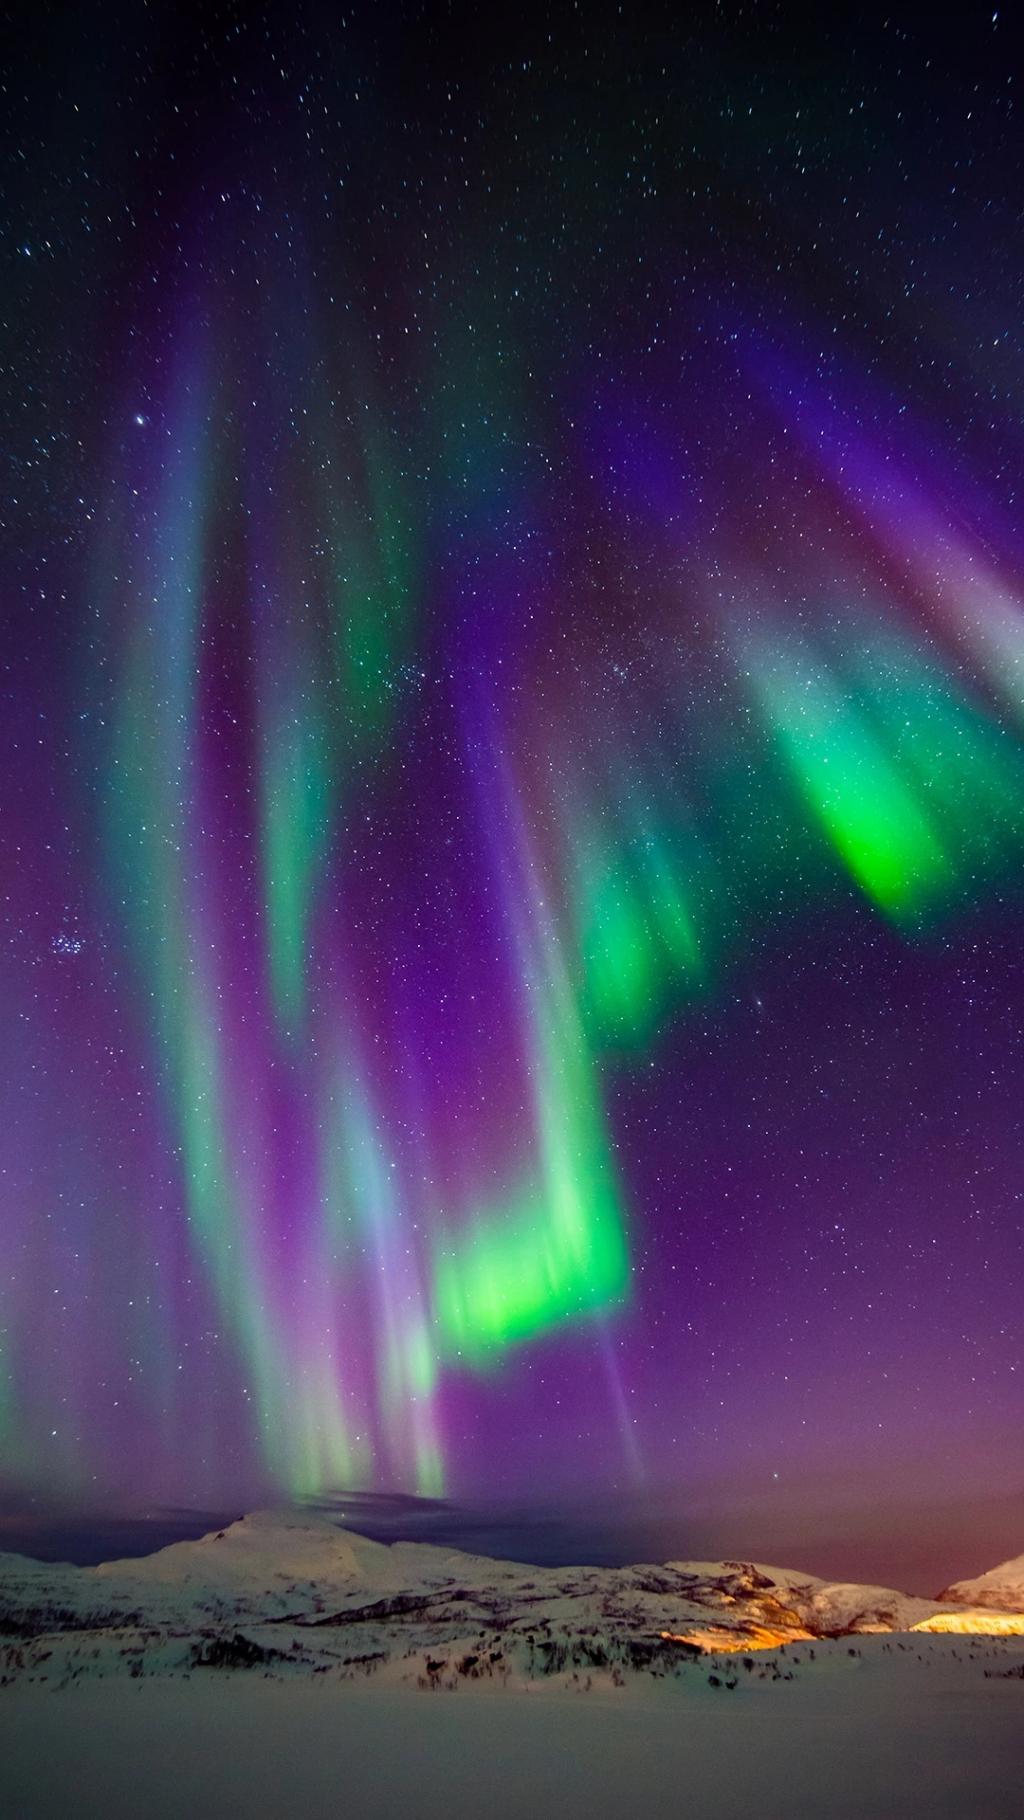 图片素材 : 天空, 晚, 大气层, 绿色, 北极光, 漩涡, 灯, 北极星, 挪威, 现象 3000x2000 - - 765376 ...